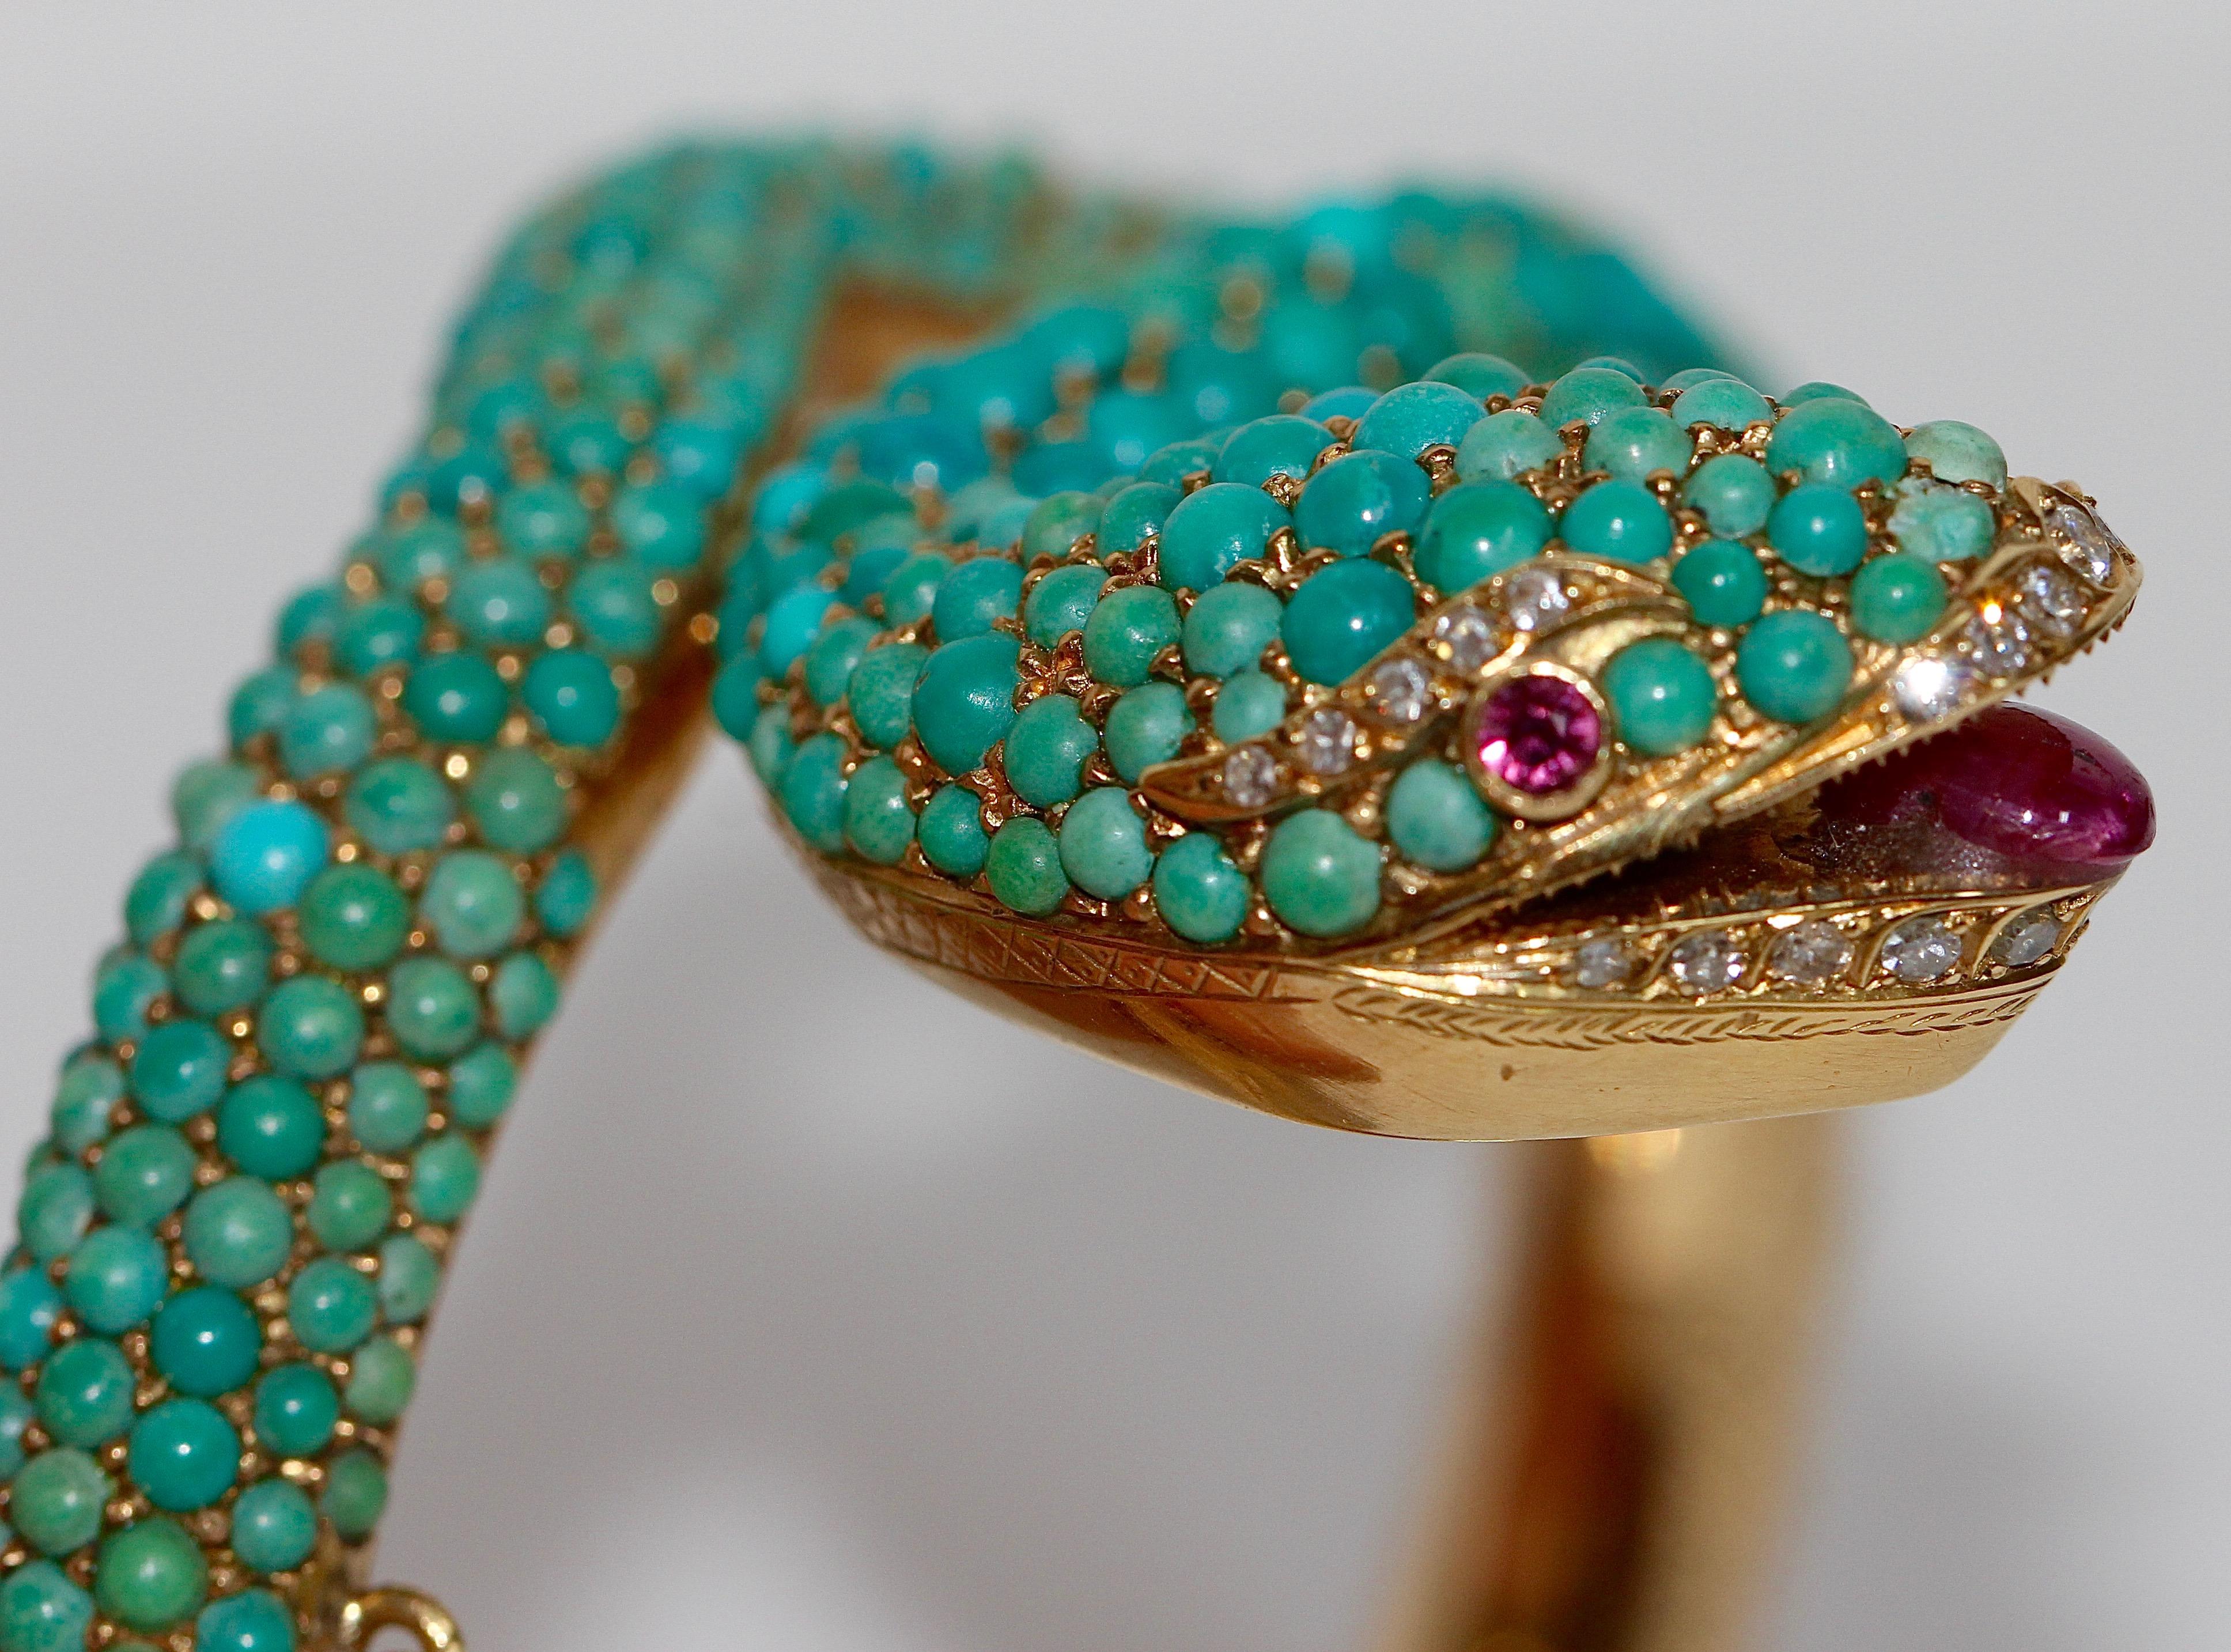 18 Karat Gold Snake Bracelet Bangle Set with Turquoise, Diamonds and ...